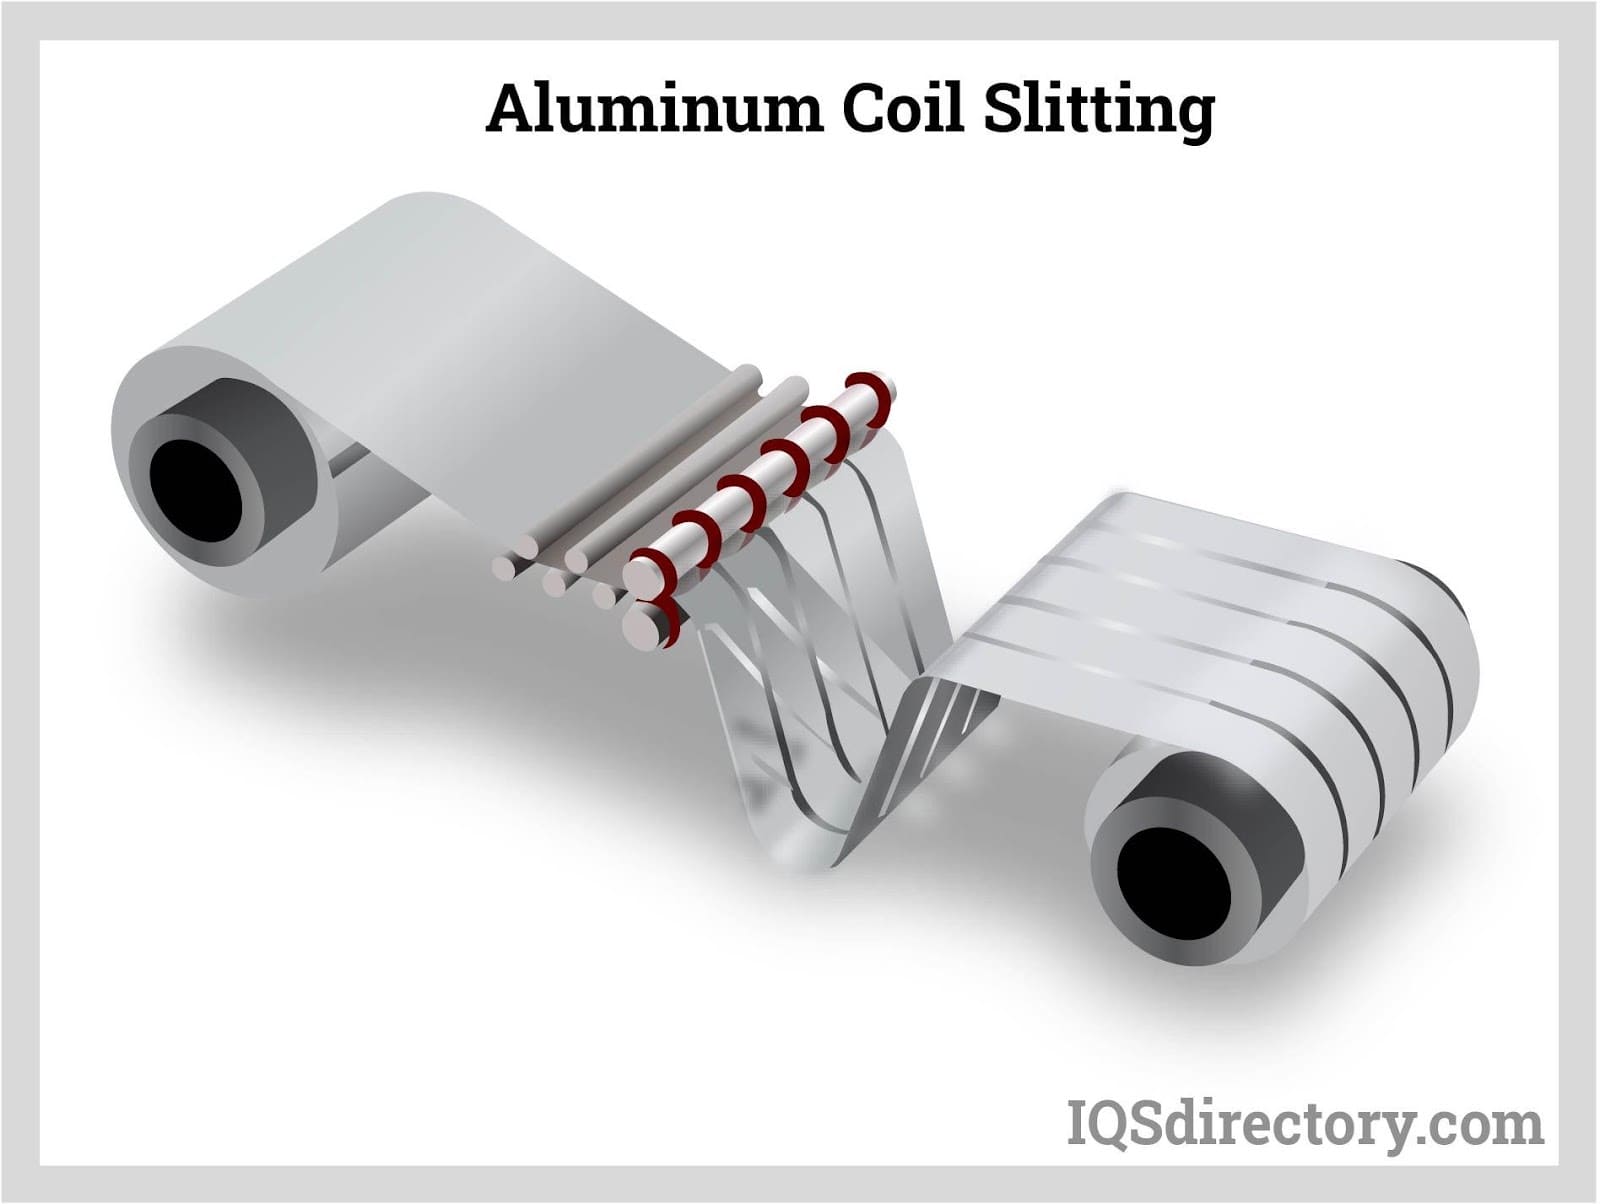 Aluminum Coil Slitting